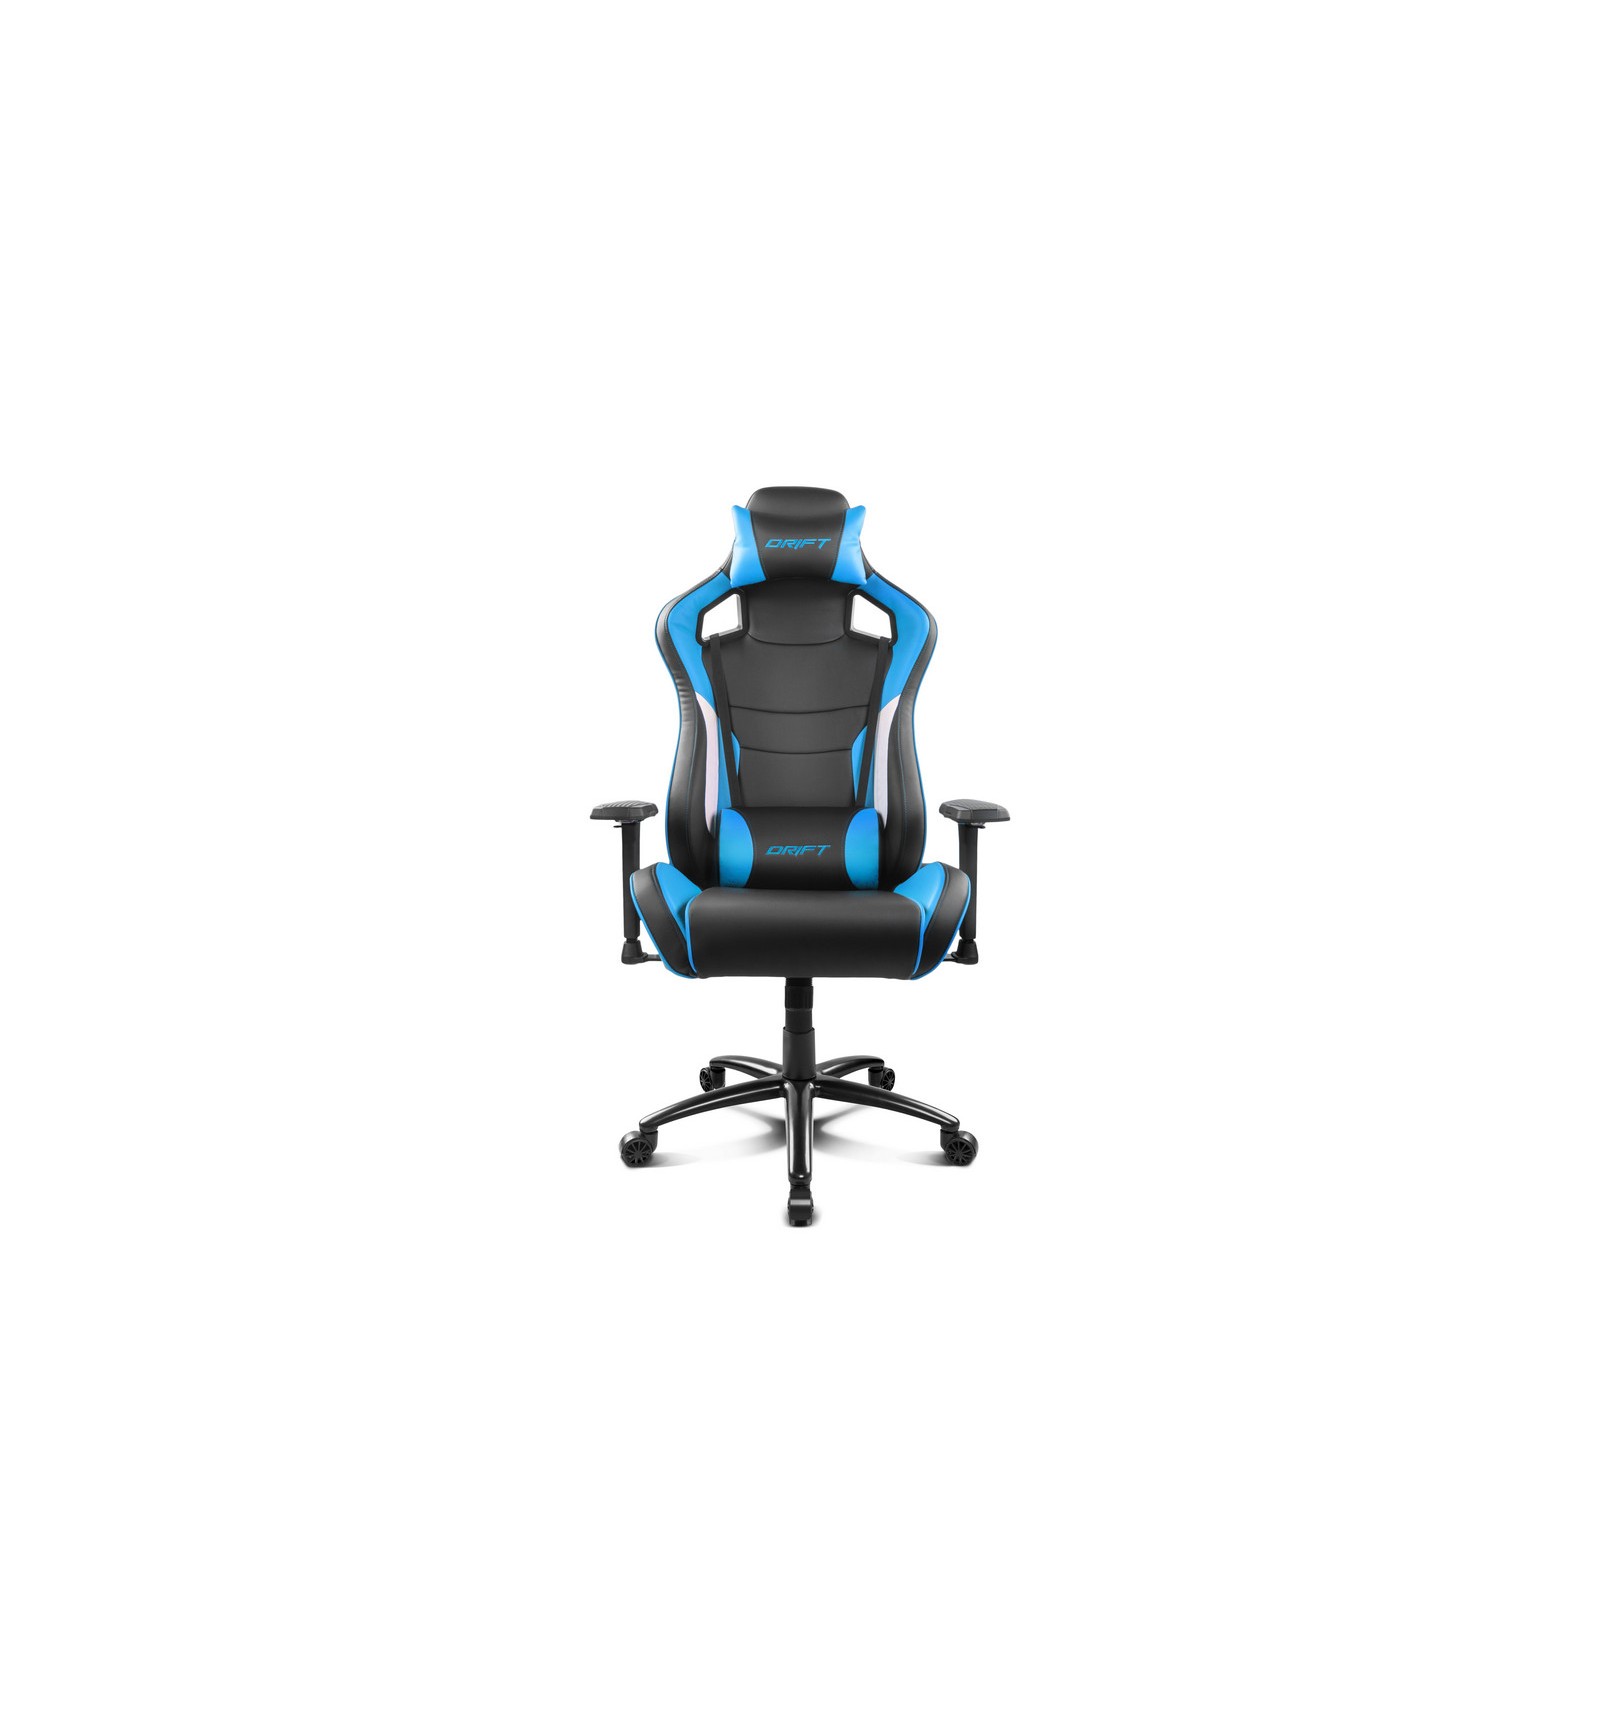 Desde allí rescate lo hizo Drift DR400 Negra y Azul - Comprar silla gaming